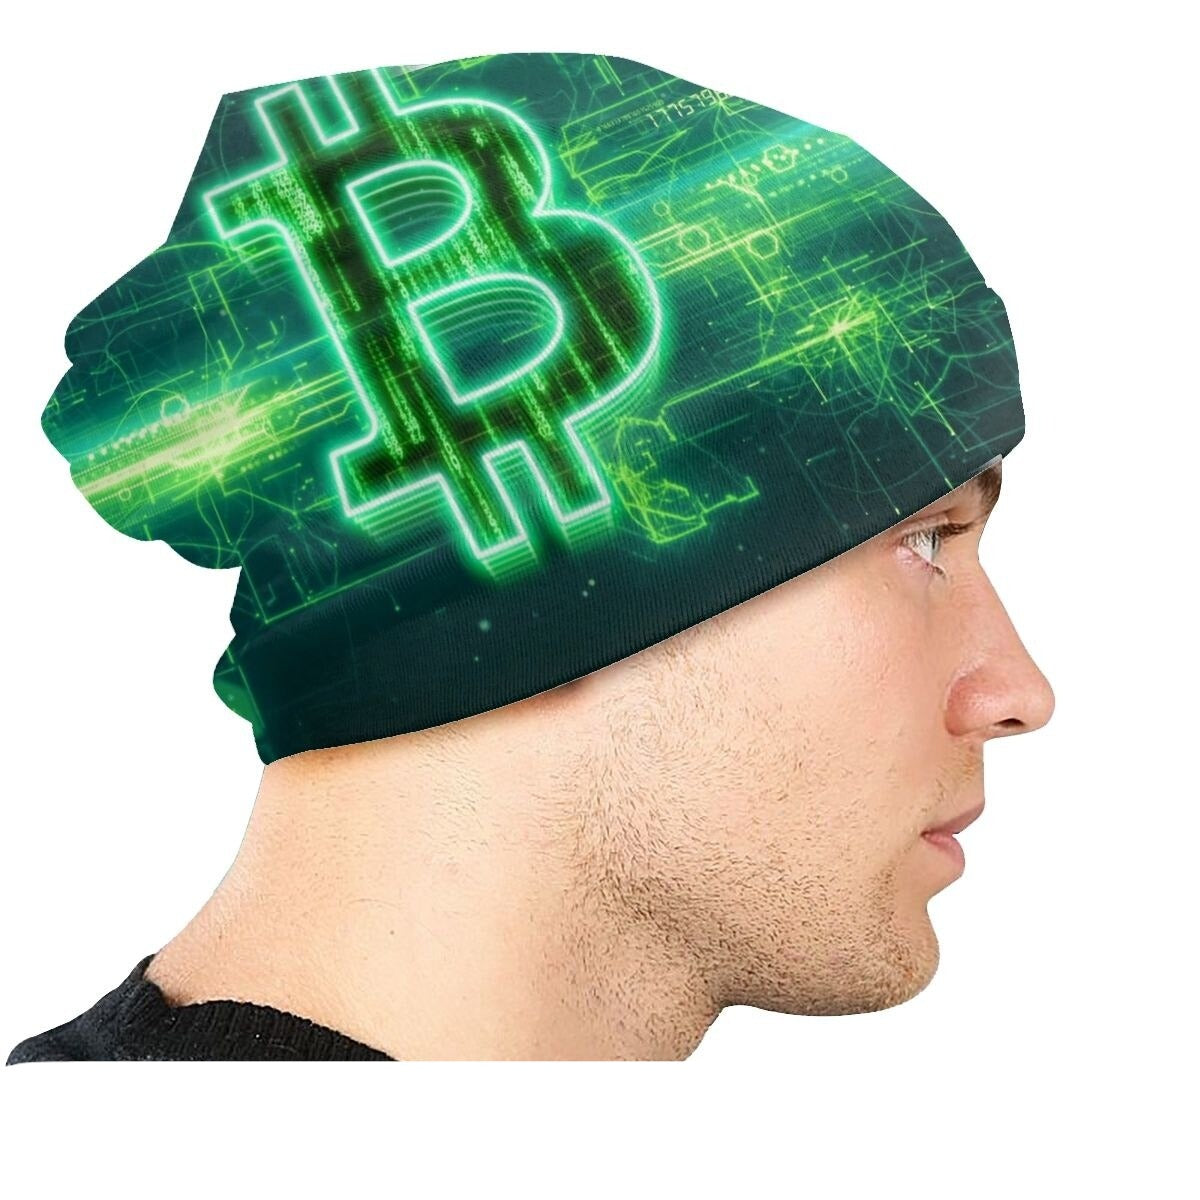 Bitcoin green hat